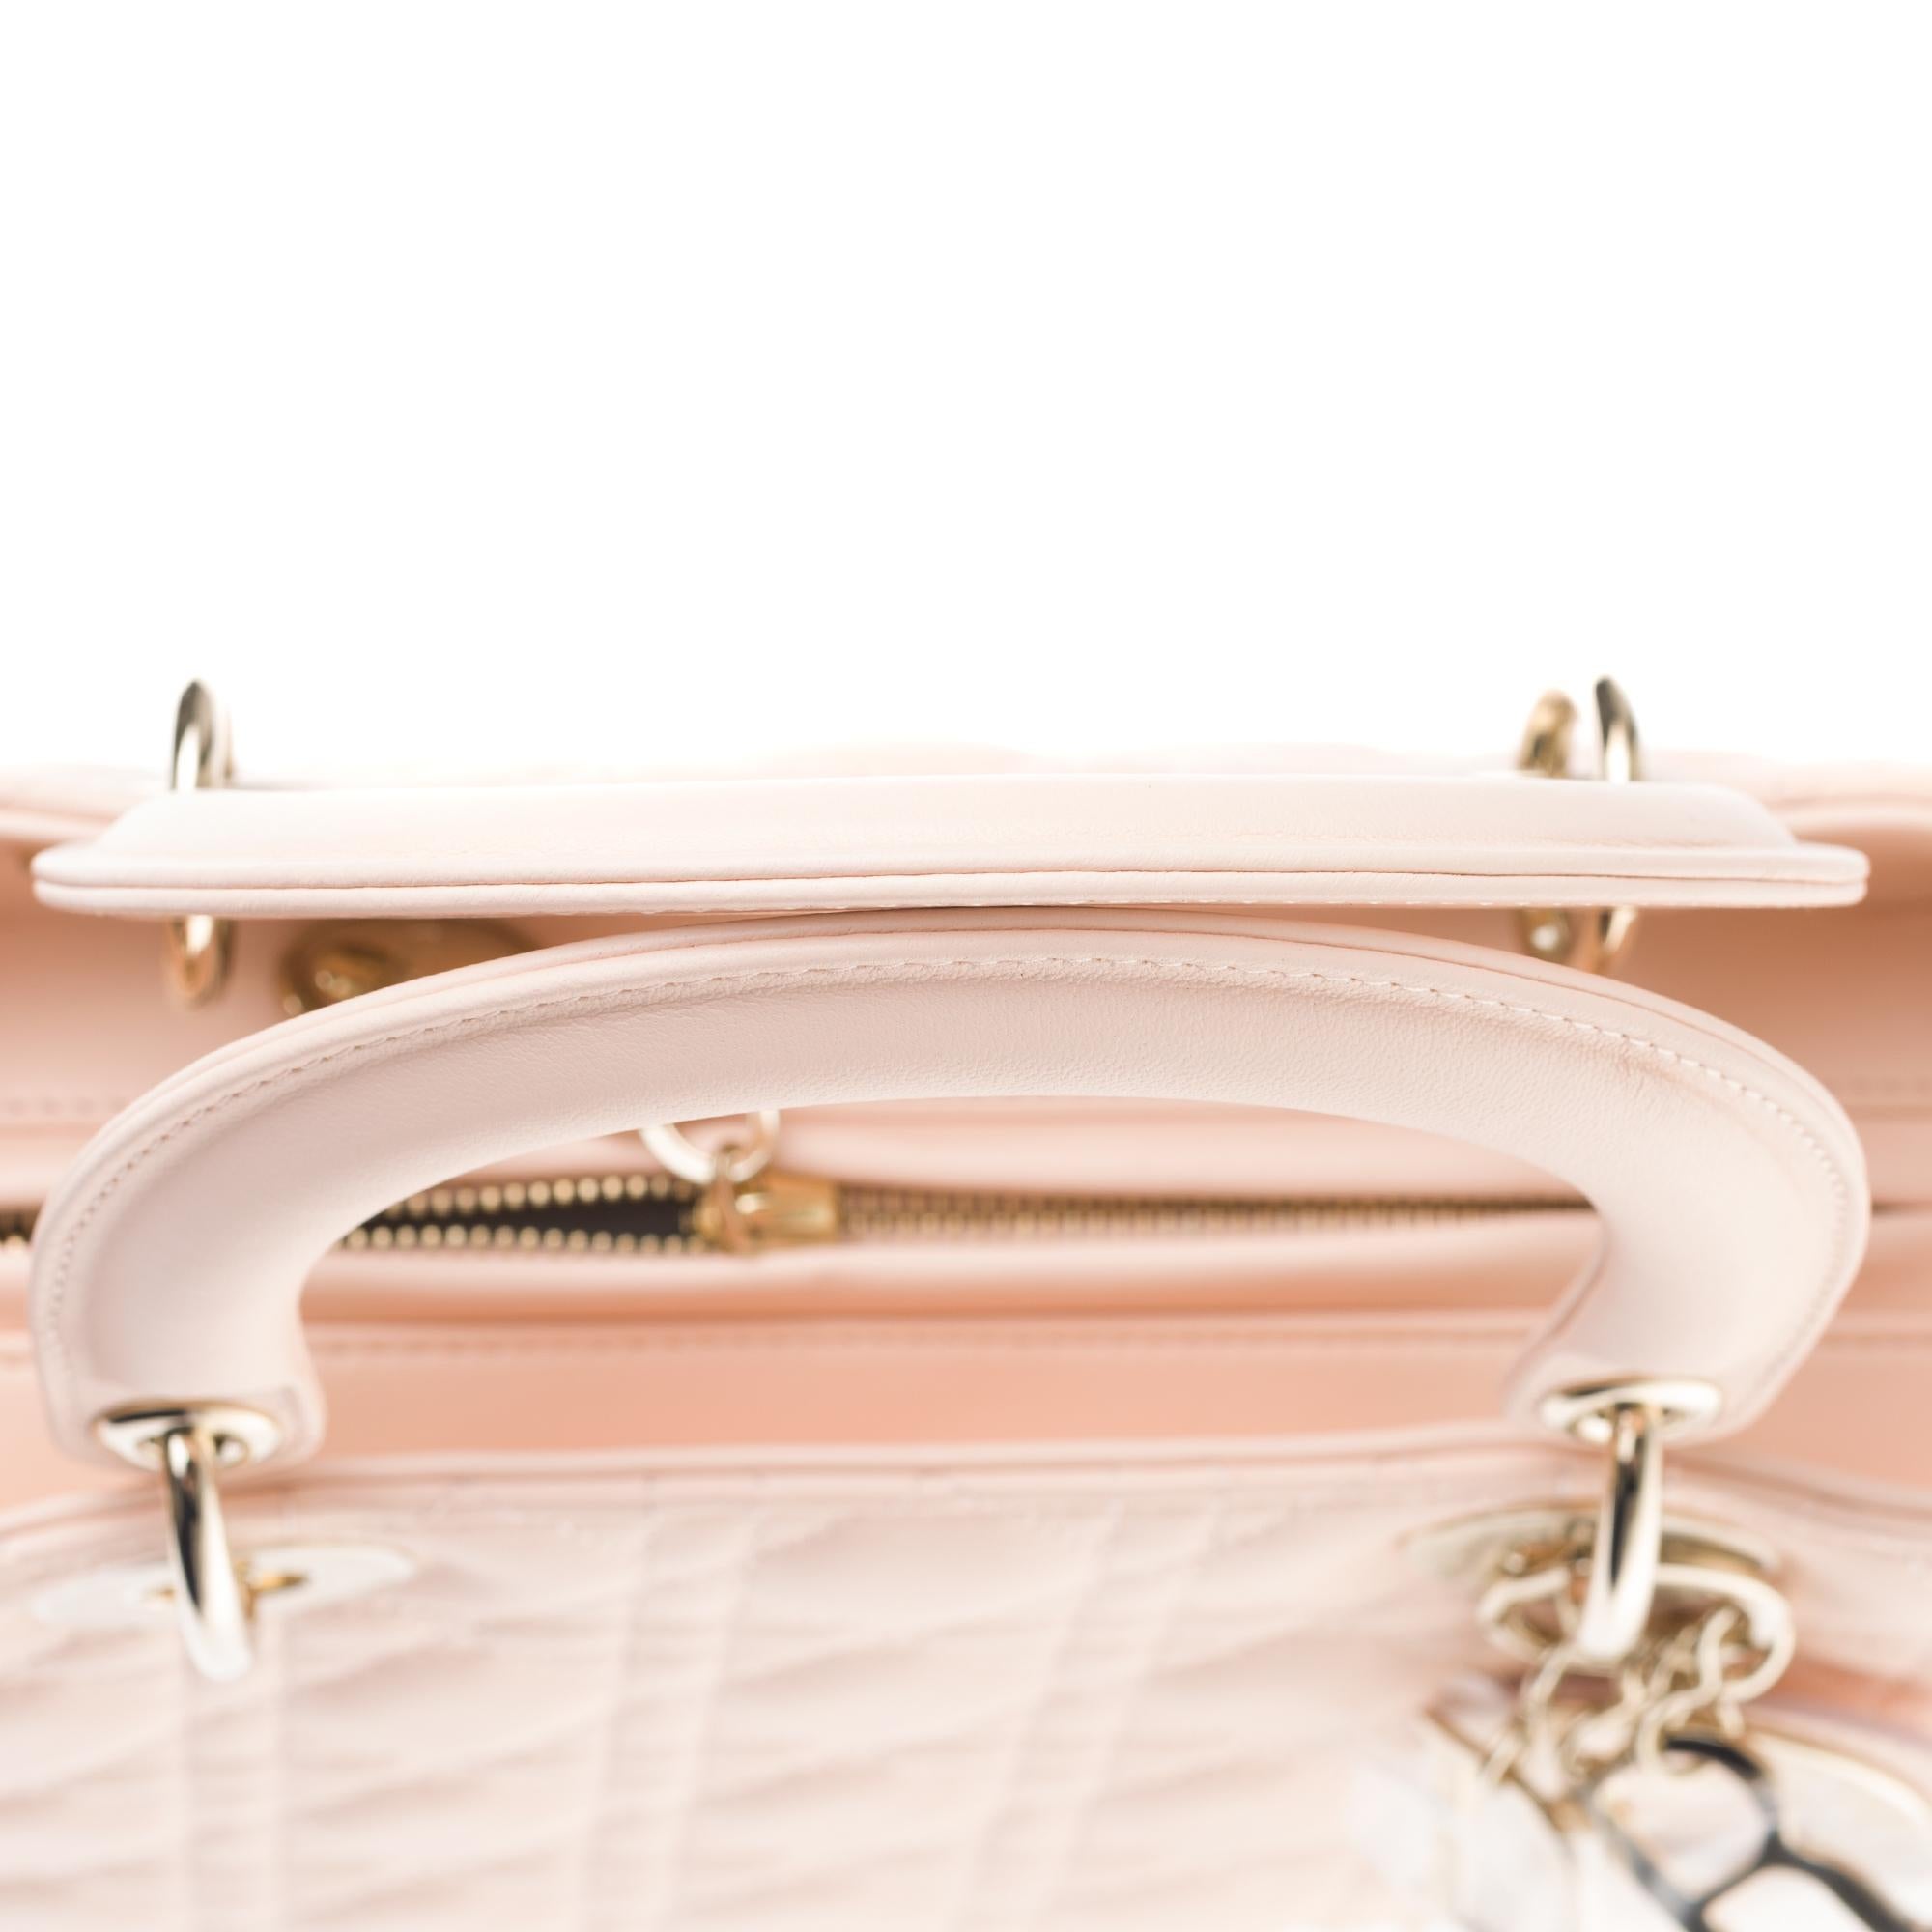  Christian Dior Lady Dior MM (Medium size) handbag in Pink cannage leather, GHW 2